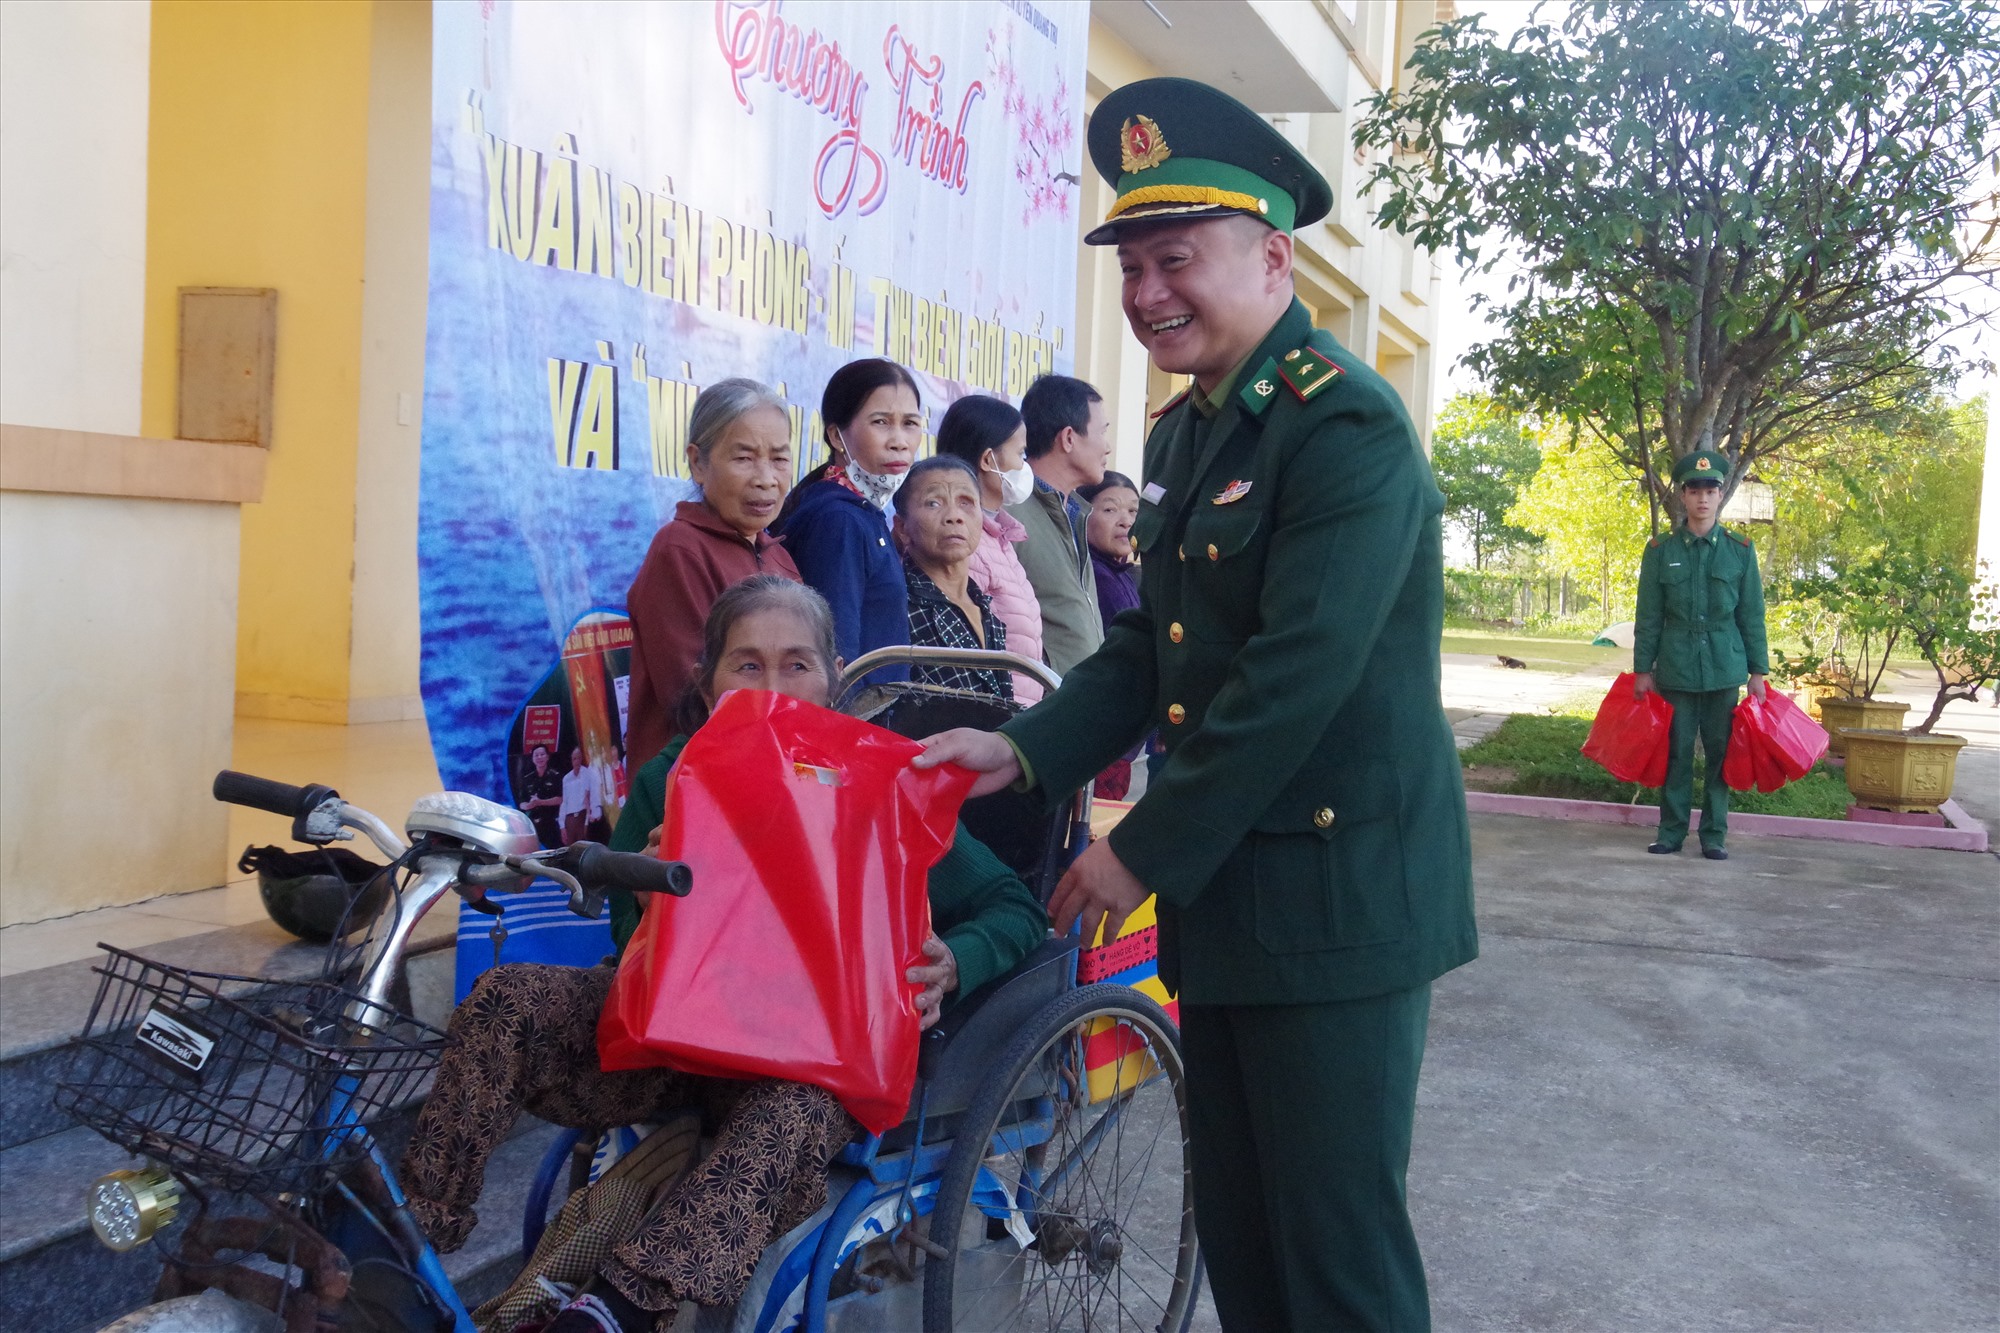 Đồng chí Thiếu tá Nguyễn Xuân Vũ - Đồn trưởng cùng Hội từ thiện Thiện Duyên tỉnh Quảng Trị tặng quà cho cá hộ gia đình chính sách, người nghèo trên địa bàn.